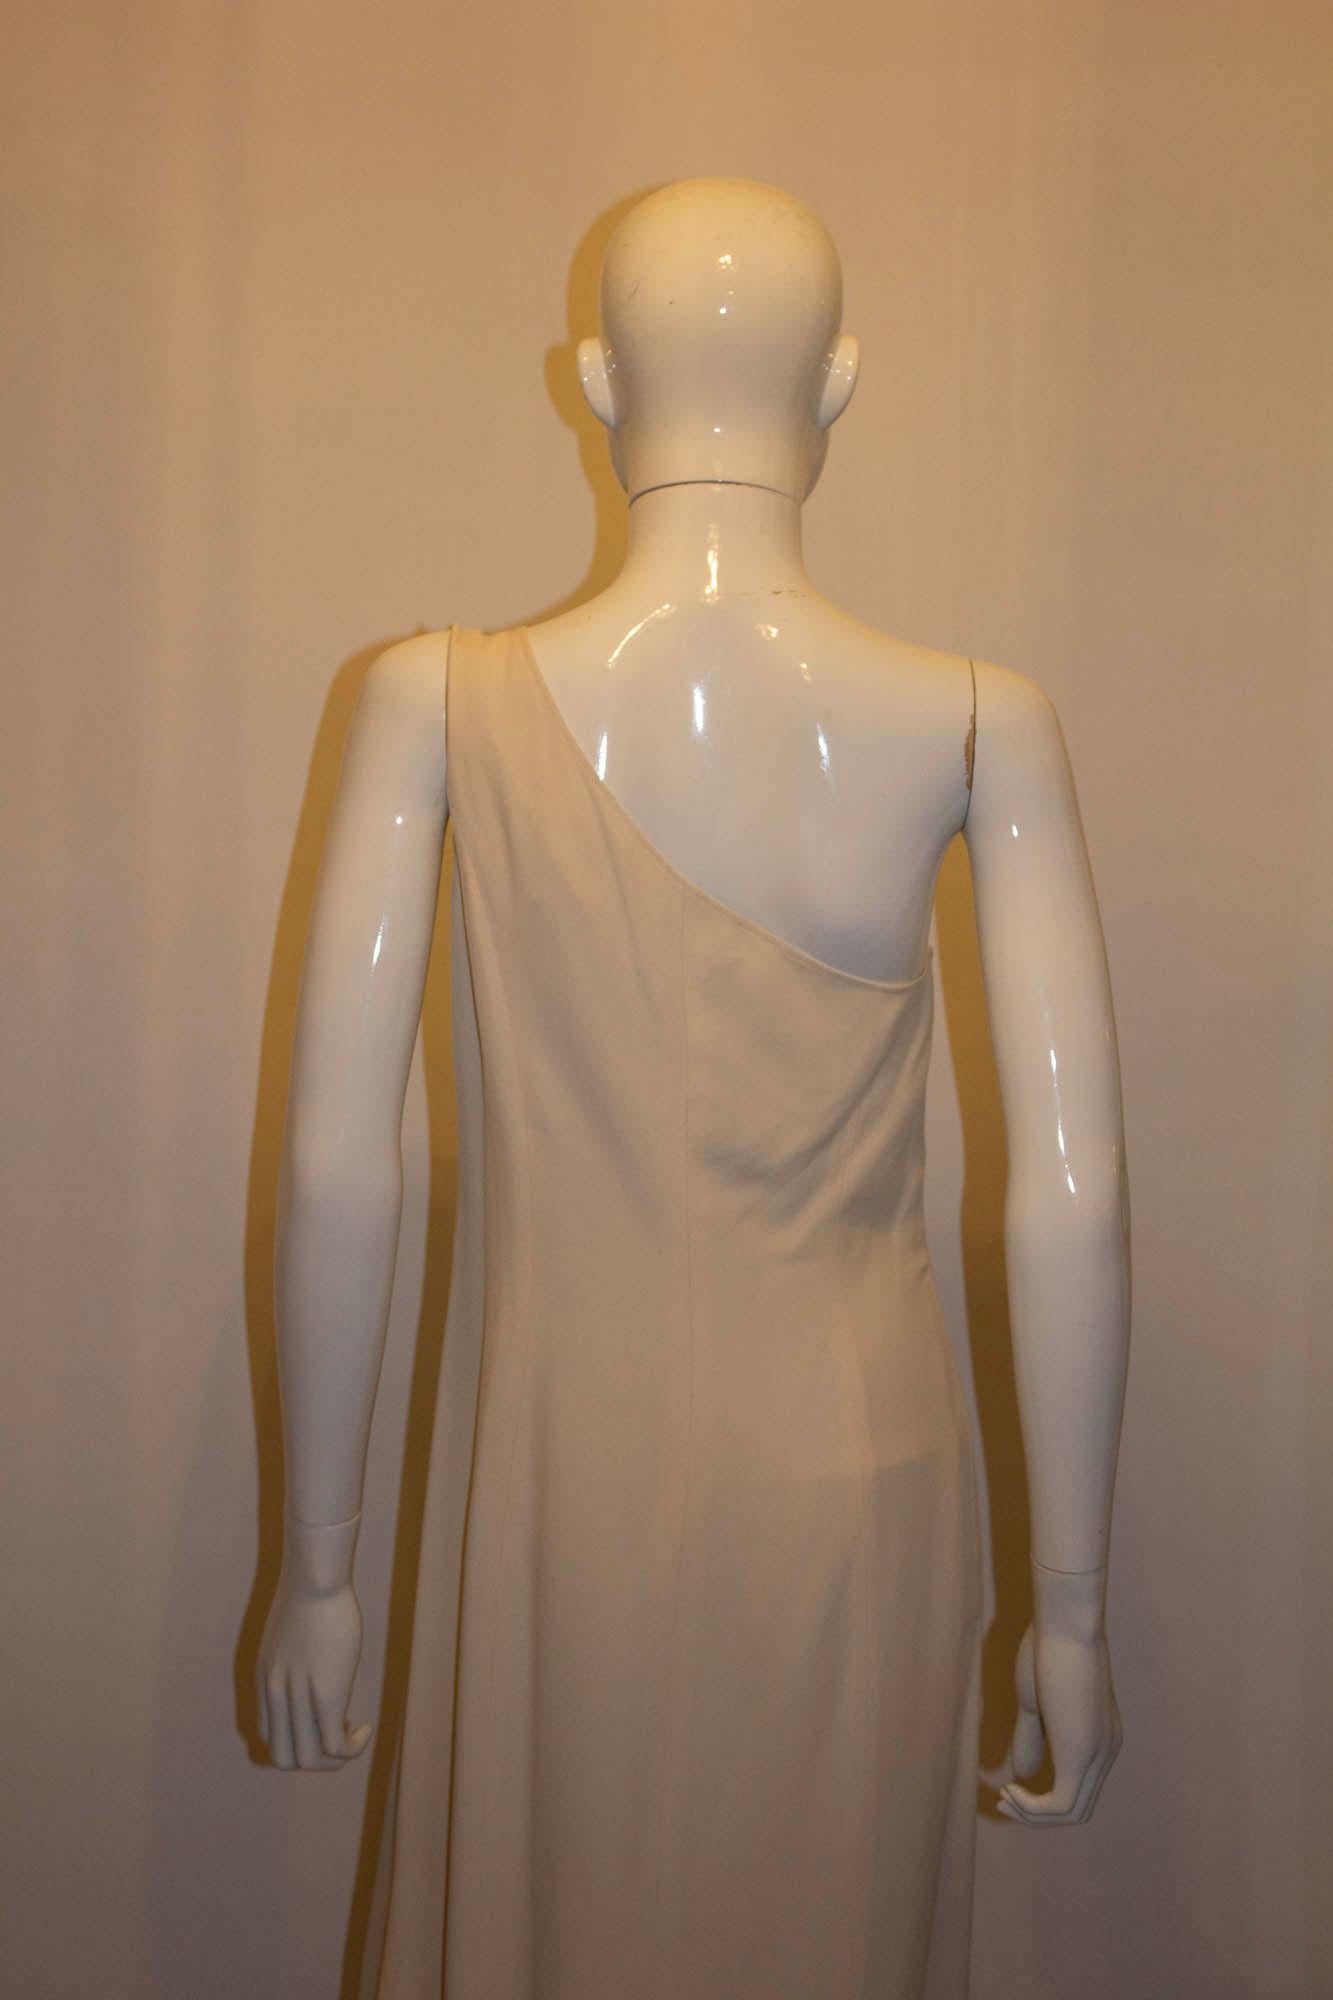 Une robe en crêpe vintage chic et audacieuse signée Claude Montana. La robe a une épaule, est entièrement doublée et a une fente de 25' sur le devant.  Fabriqué en Italie, taille 42/8.
Mesures : Poitrine 36/7, longueur 54''